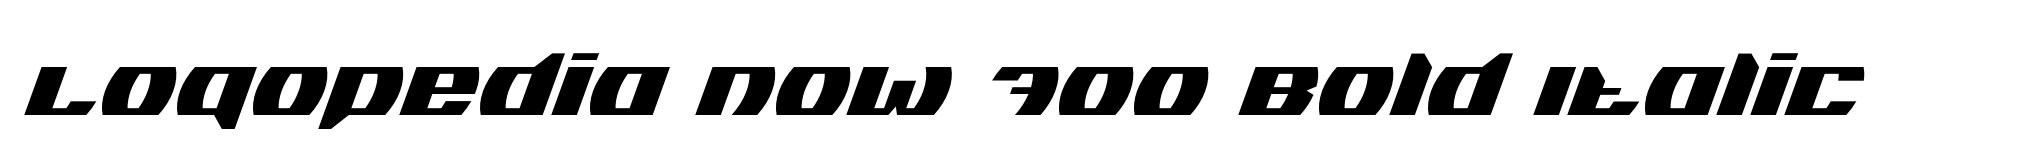 Logopedia Now 700 Bold Italic image